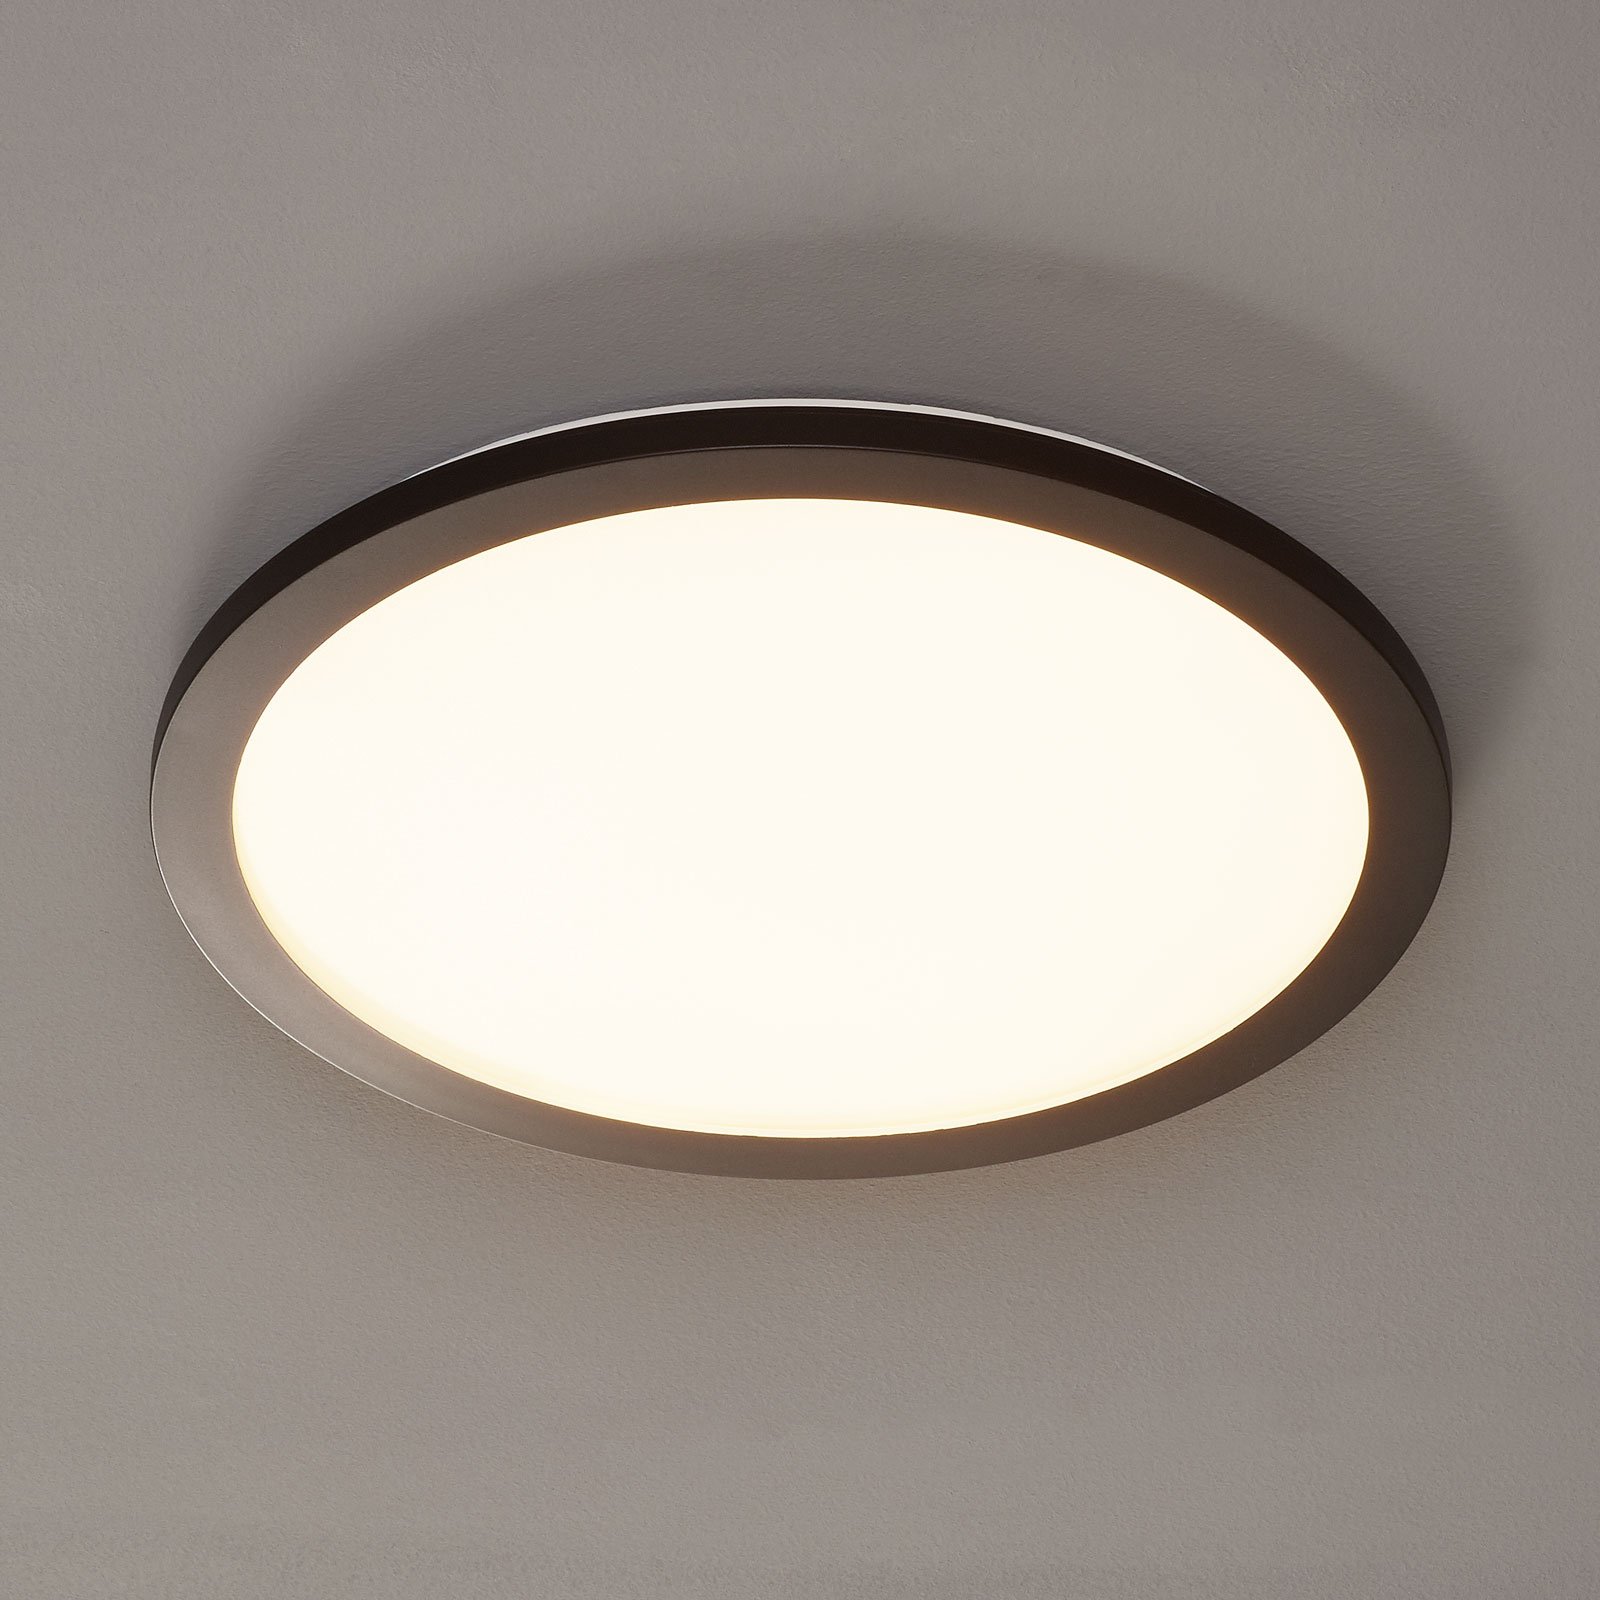 LED-loftlampe Camillus, rund, 40 cm